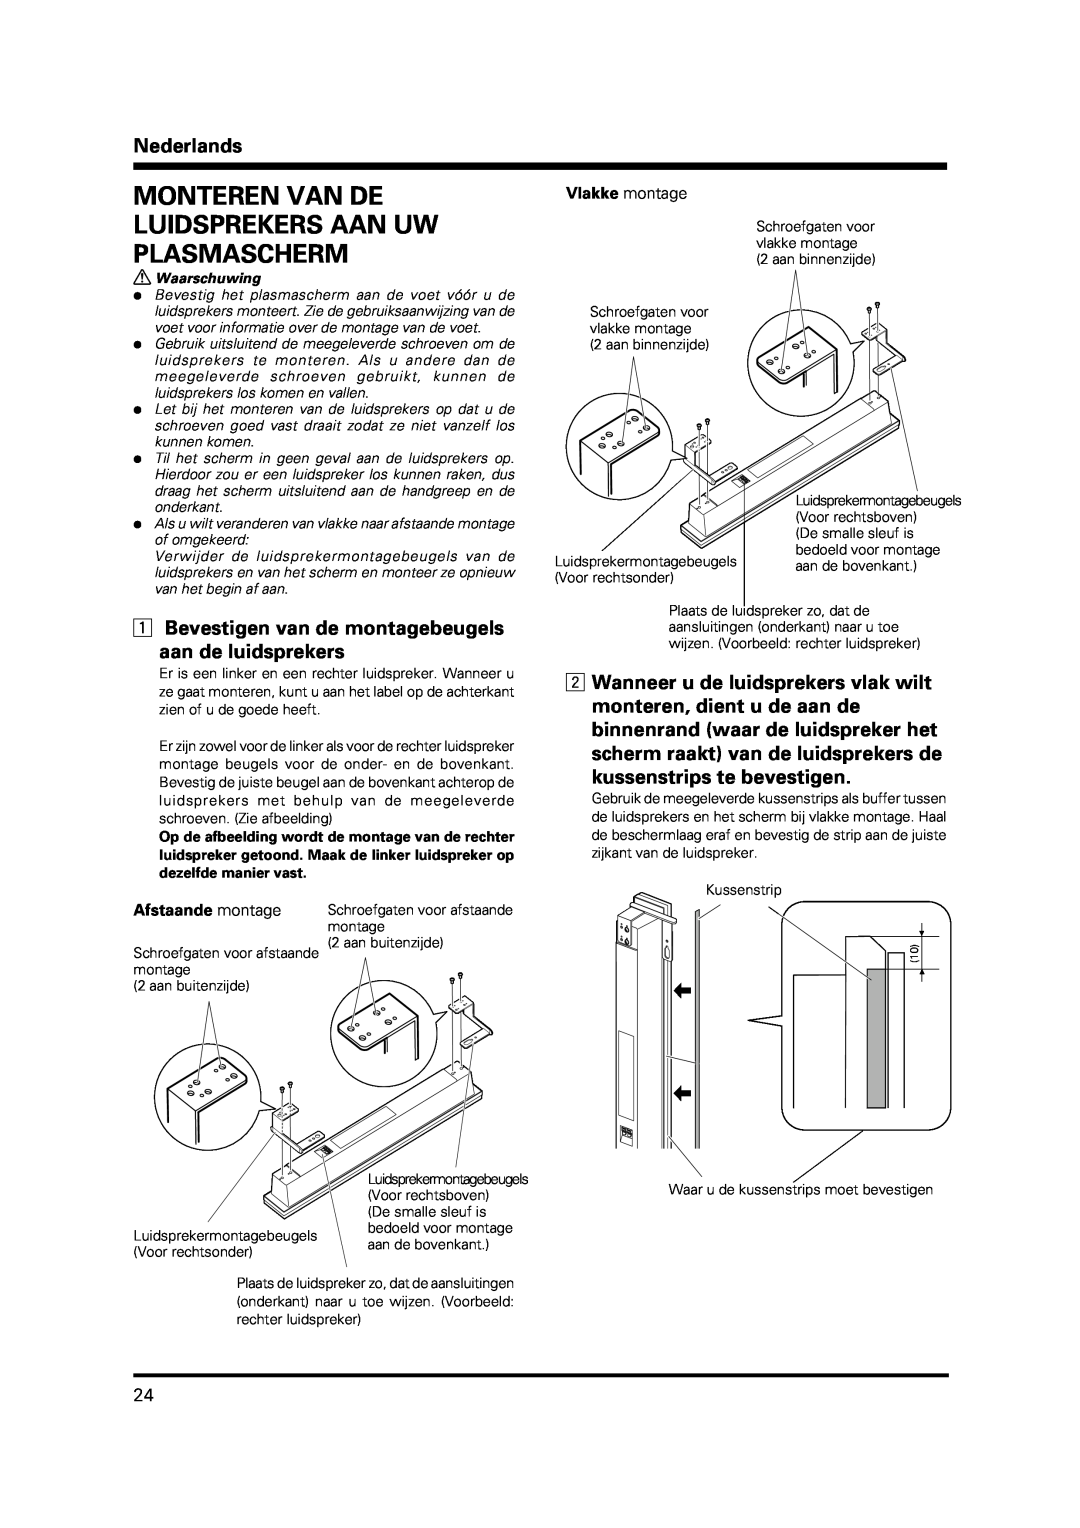 Pioneer PDP-S38 manual Monteren Van De Luidsprekers Aan Uw Plasmascherm, Nederlands, 1Bevestigen van de montagebeugels 